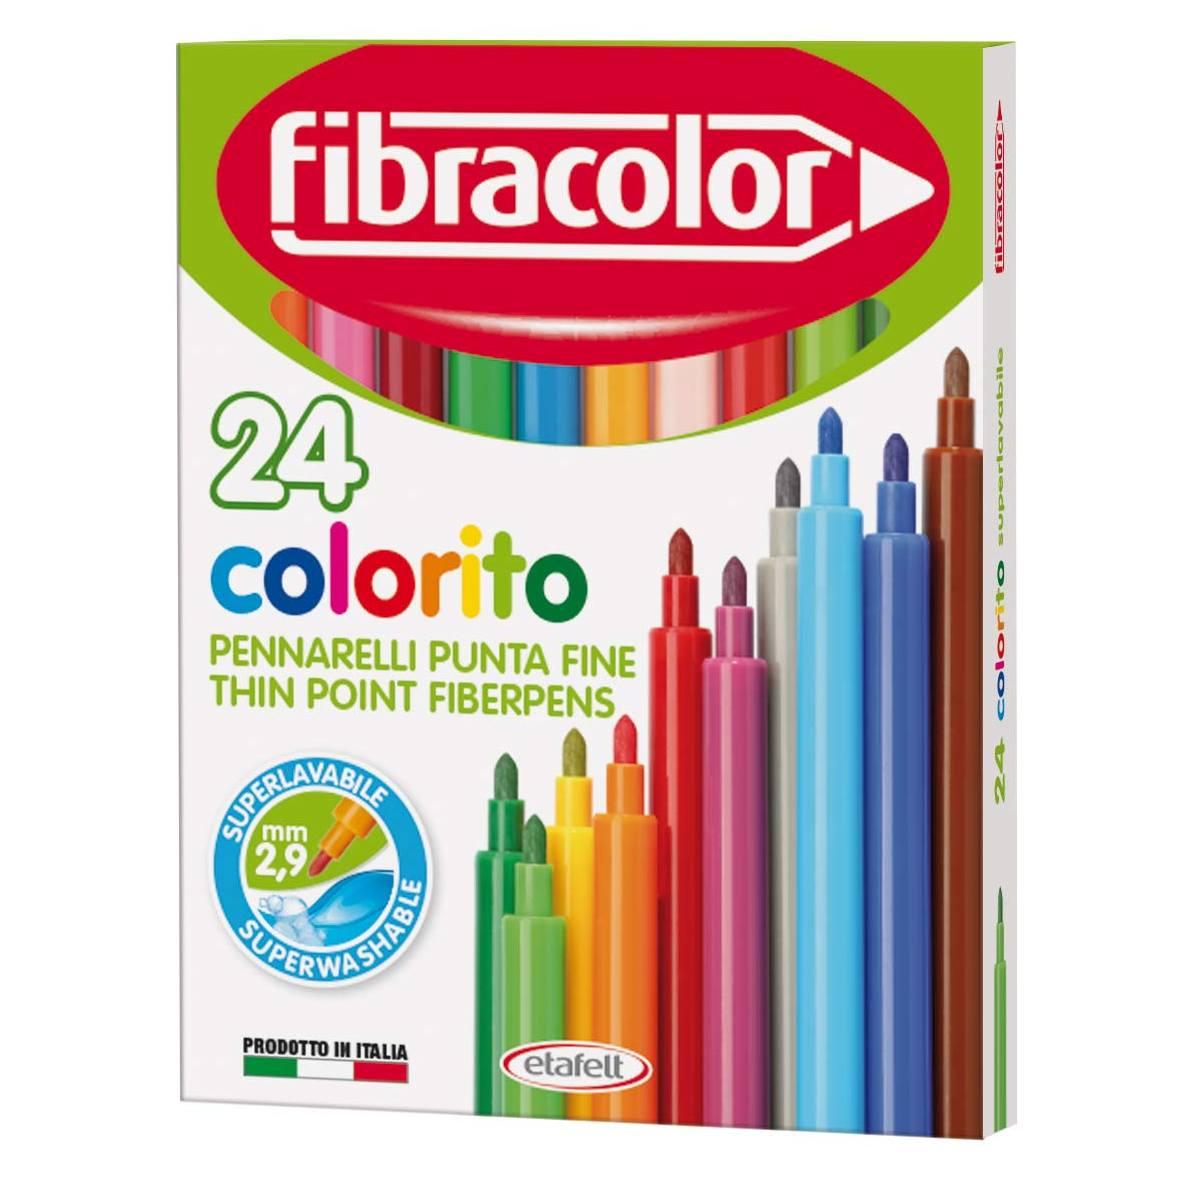 Fibracolor Fibracolor colorito - pennarelli punta fine - confezione da 24  pz 10539SW024SC 8008621000685